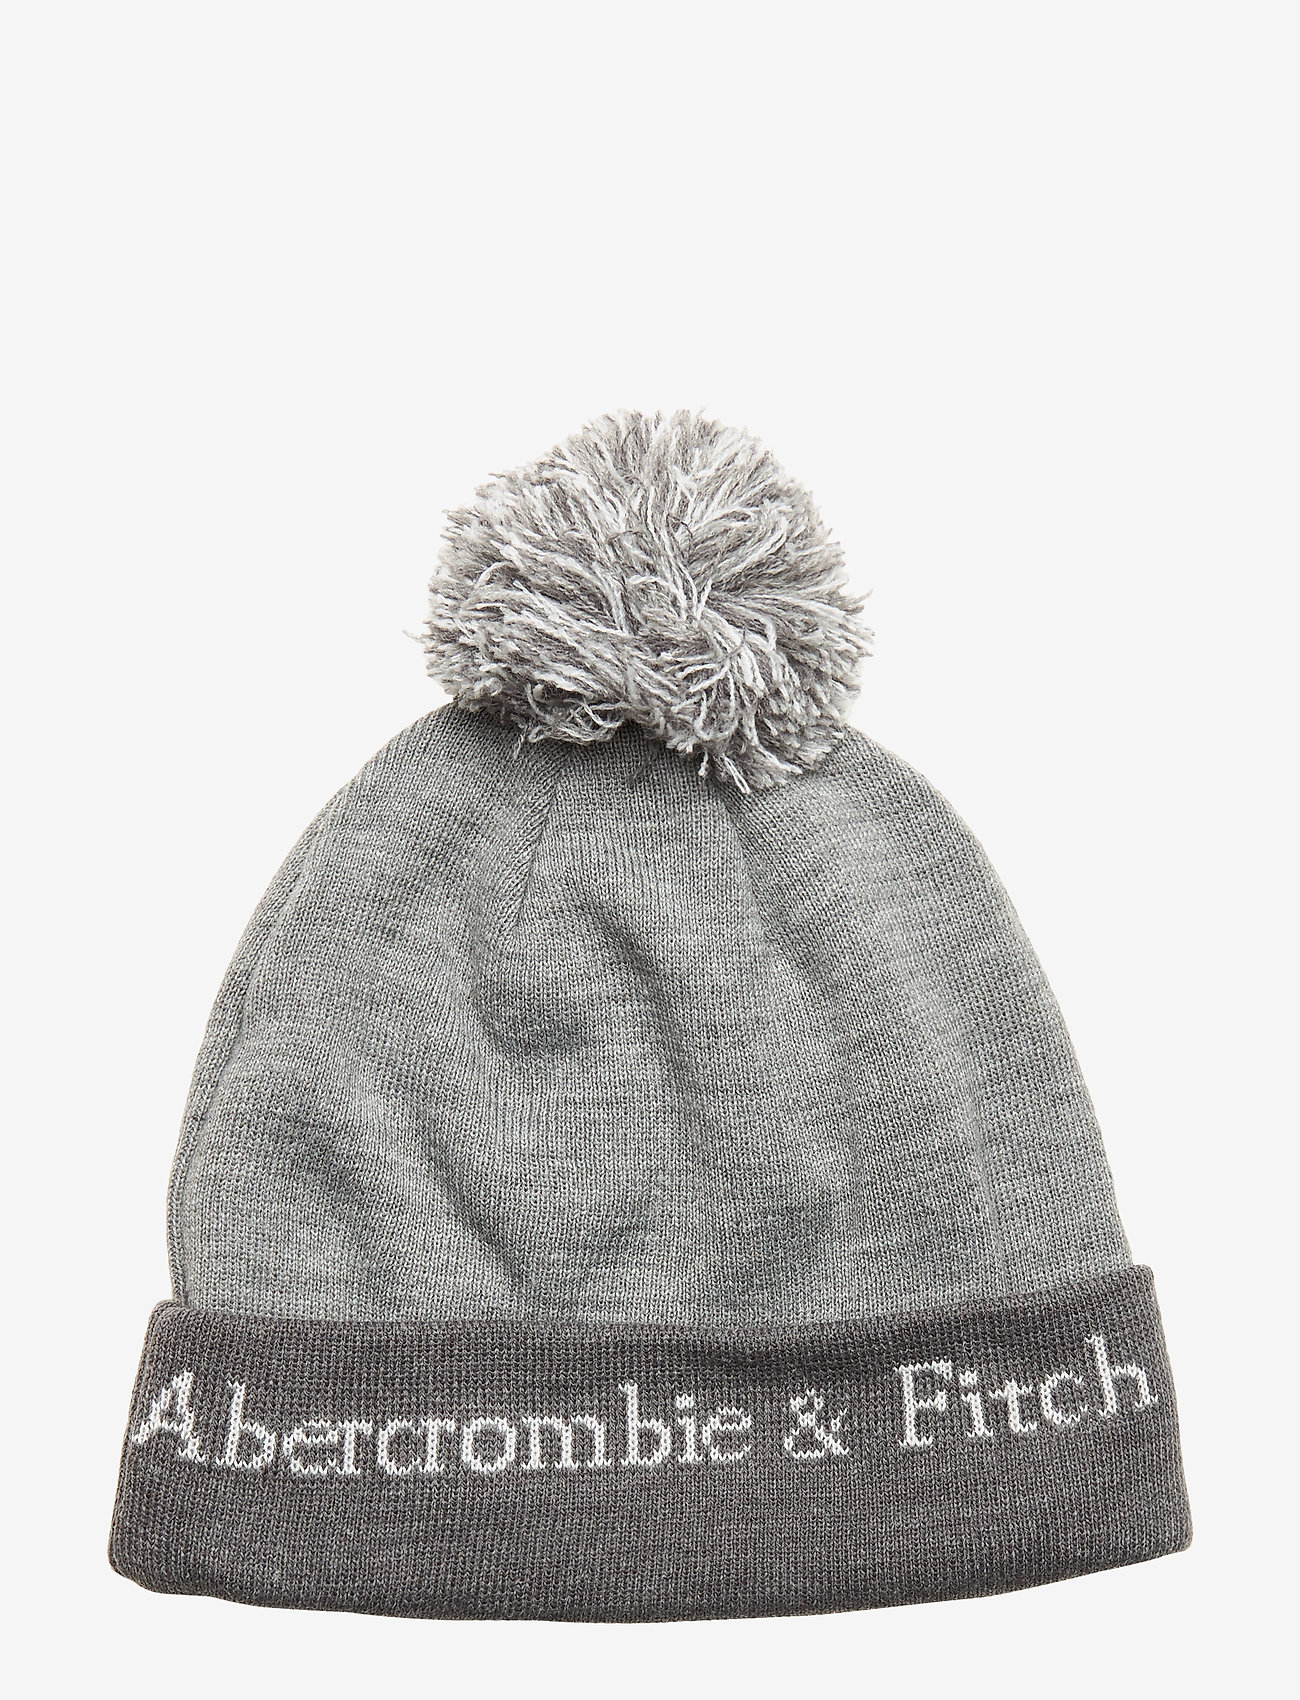 abercrombie and fitch pom pom hat